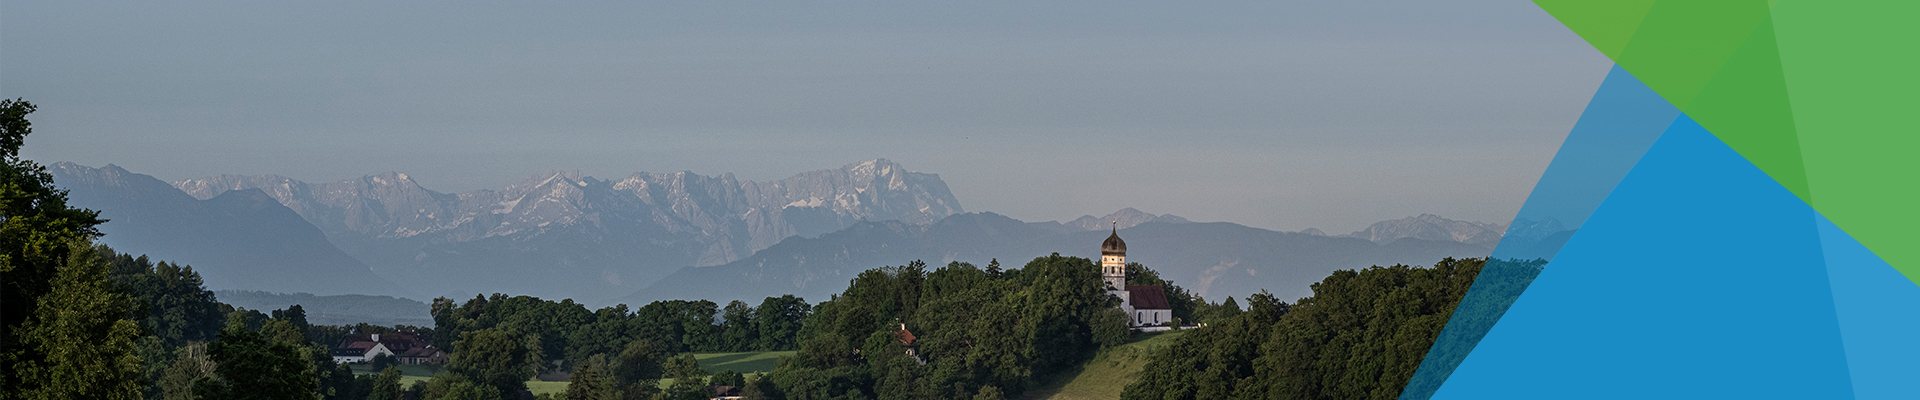 Für alle, die auf der Suche nach Gruppen- und Pauschalangeboten sind, haben wir eine breite Auswahl in unserer Region StarnbergAmmersee. Auf dem Bild sehen Sie das Bergpanorama der Bayerischen Alpen, welches von uns aus bewundert werden kann.